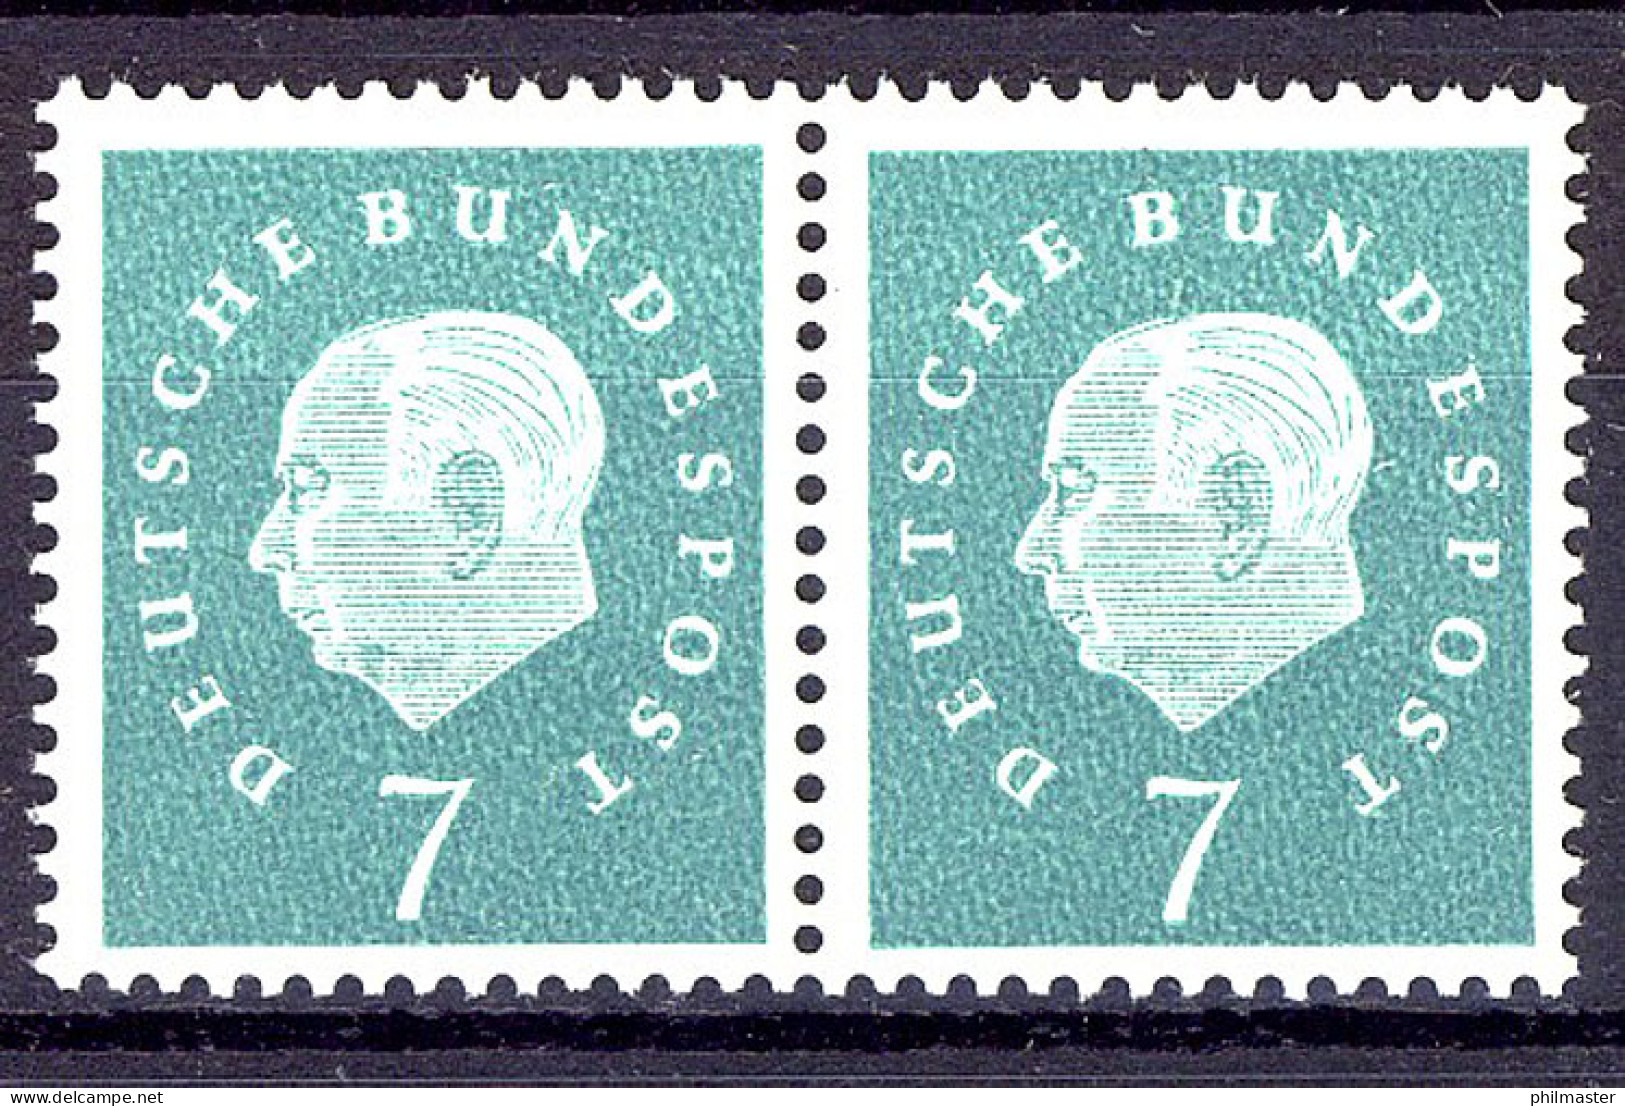 302 Heuss III 7 Pf Waag. Paar ** Postfrisch - Unused Stamps